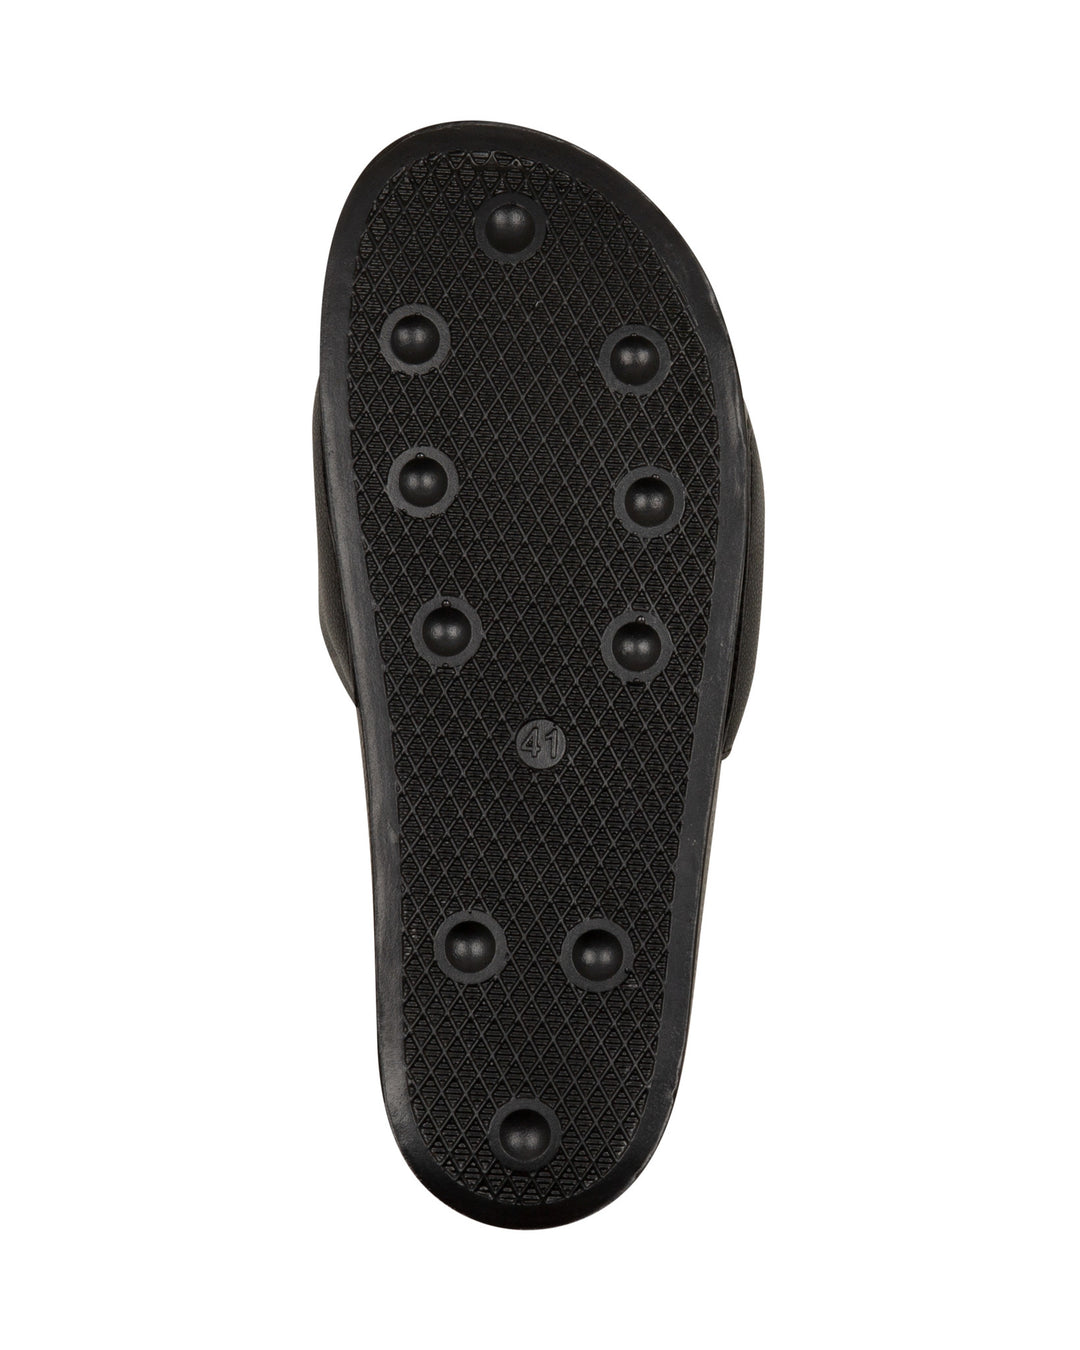 NEW ERA® Brand AX20 Men's Slides Sandals - Black and White